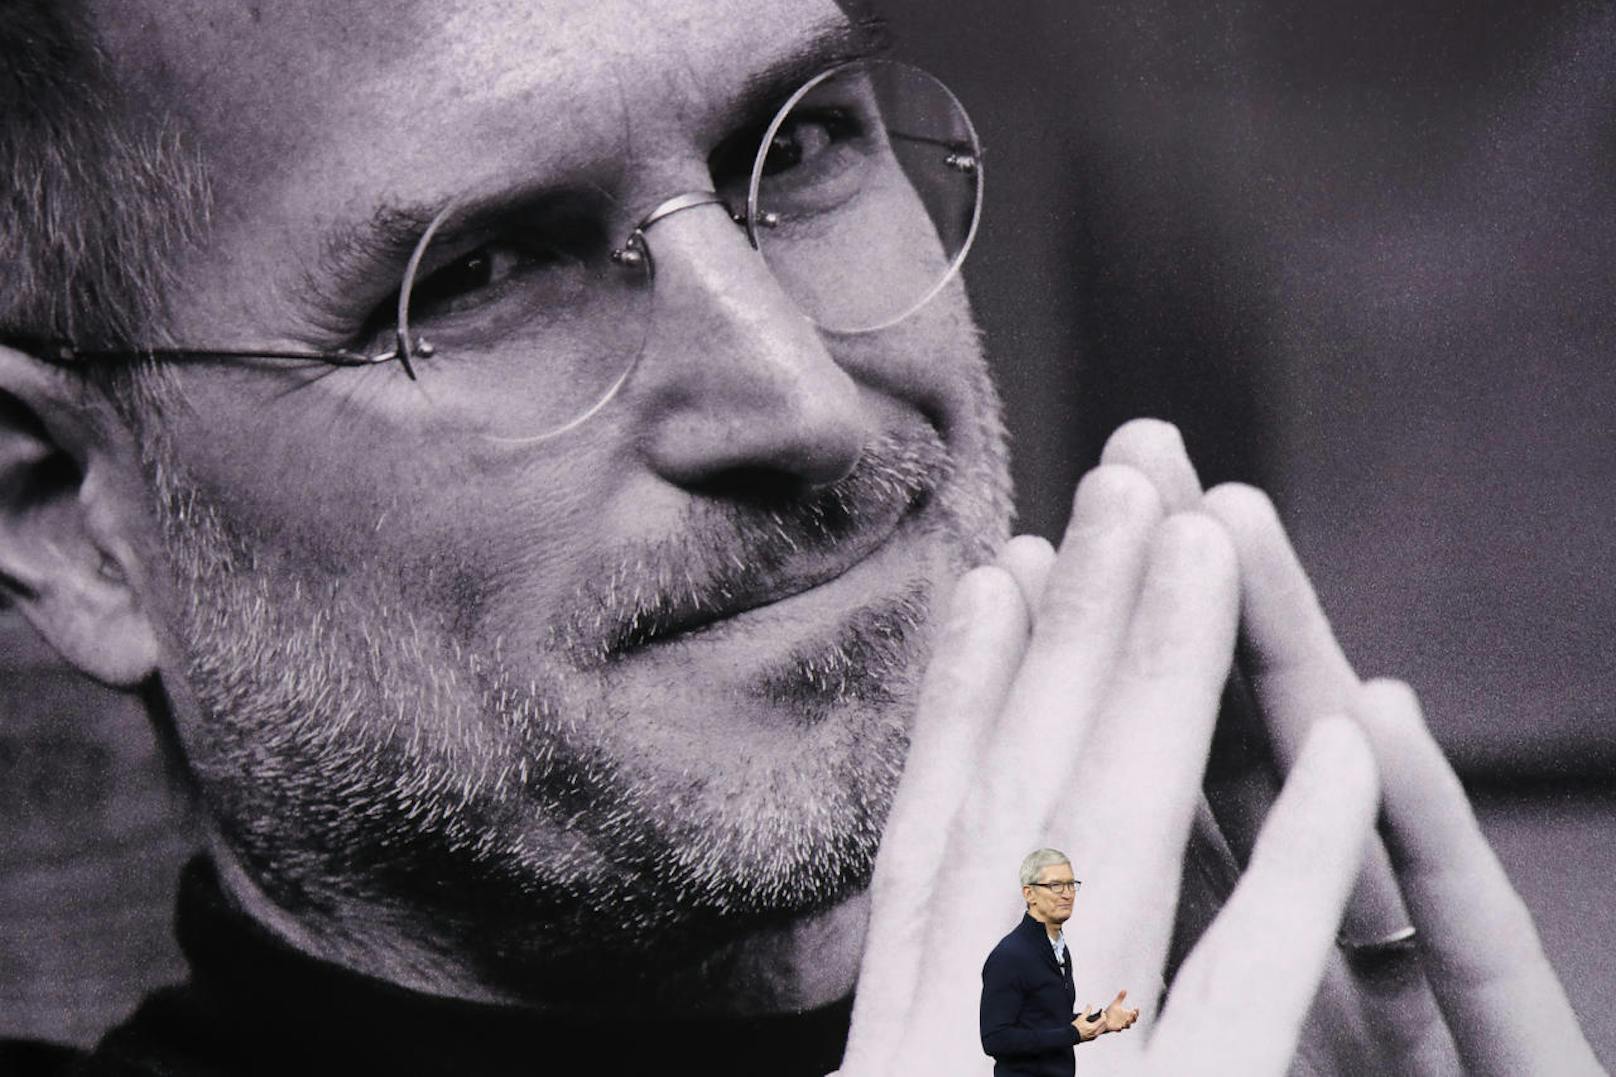 Tim Cook ehrte den verstorbenen Steve Jobs: "Er war ein Genie".